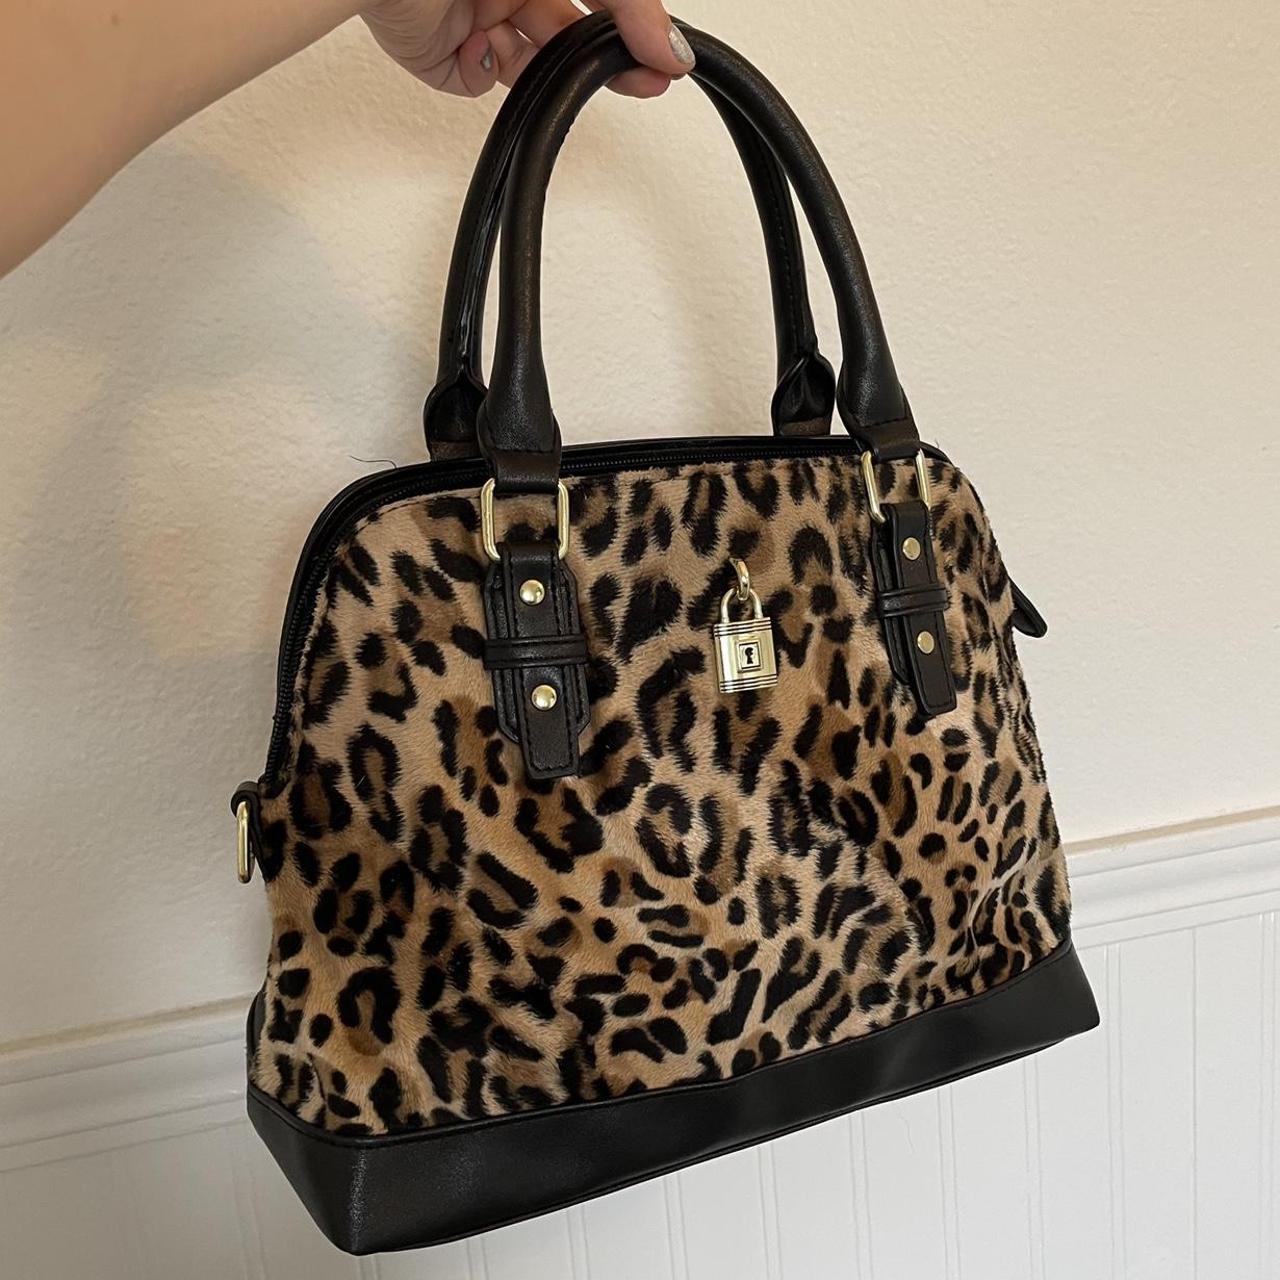 Cute Leopard Tote Bag